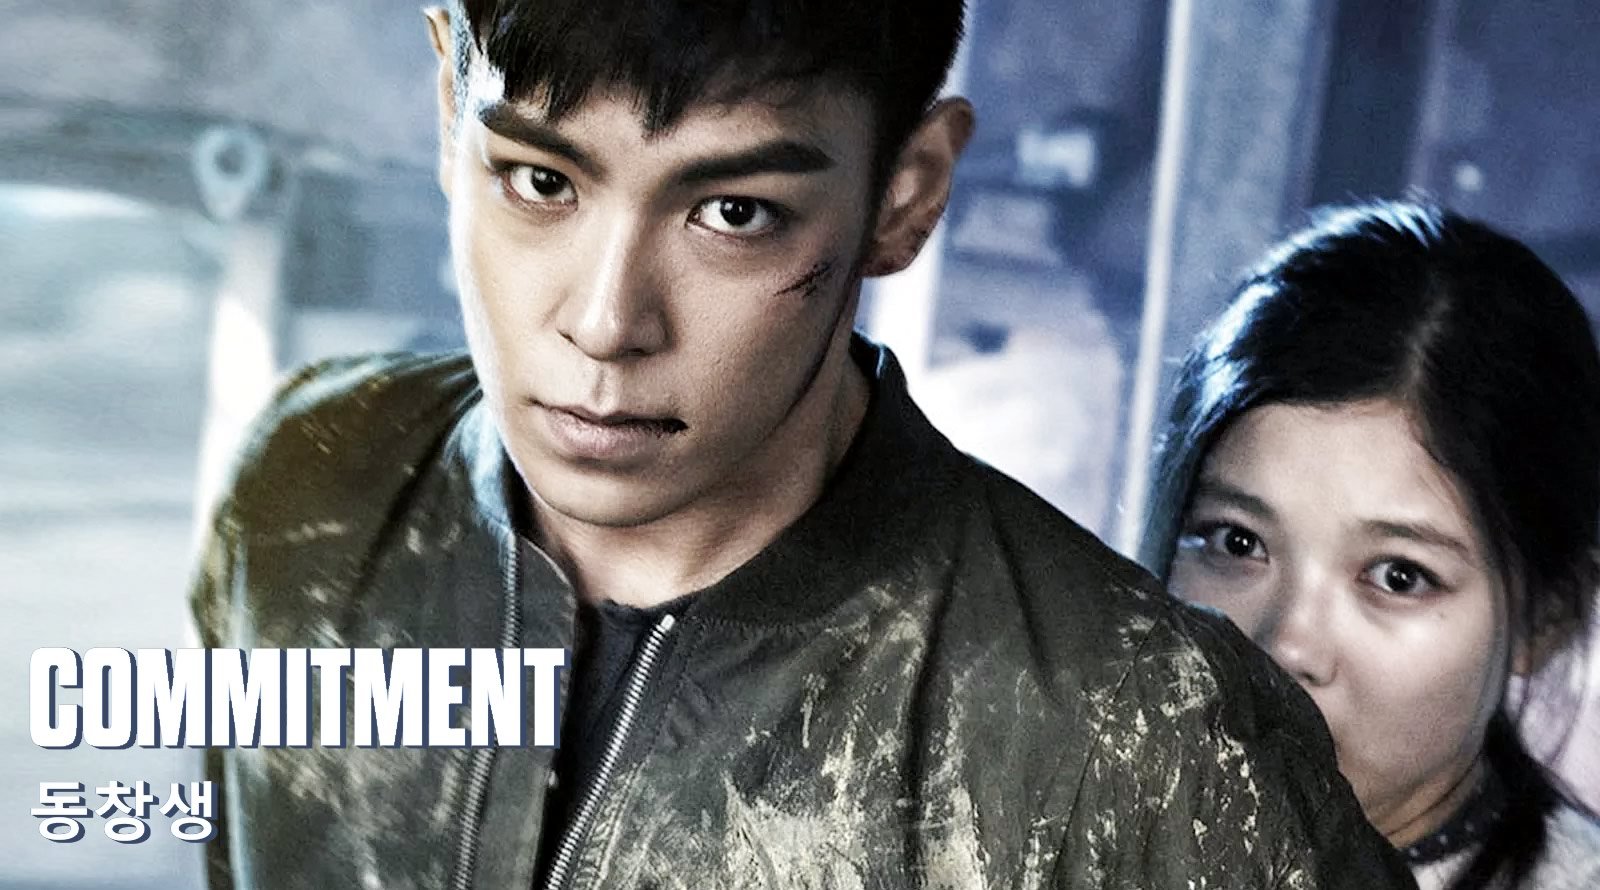 Commitment | Dorama de ação sul-coreano de 2013 com Choi Seung Hyun conhecido como T.O.P.